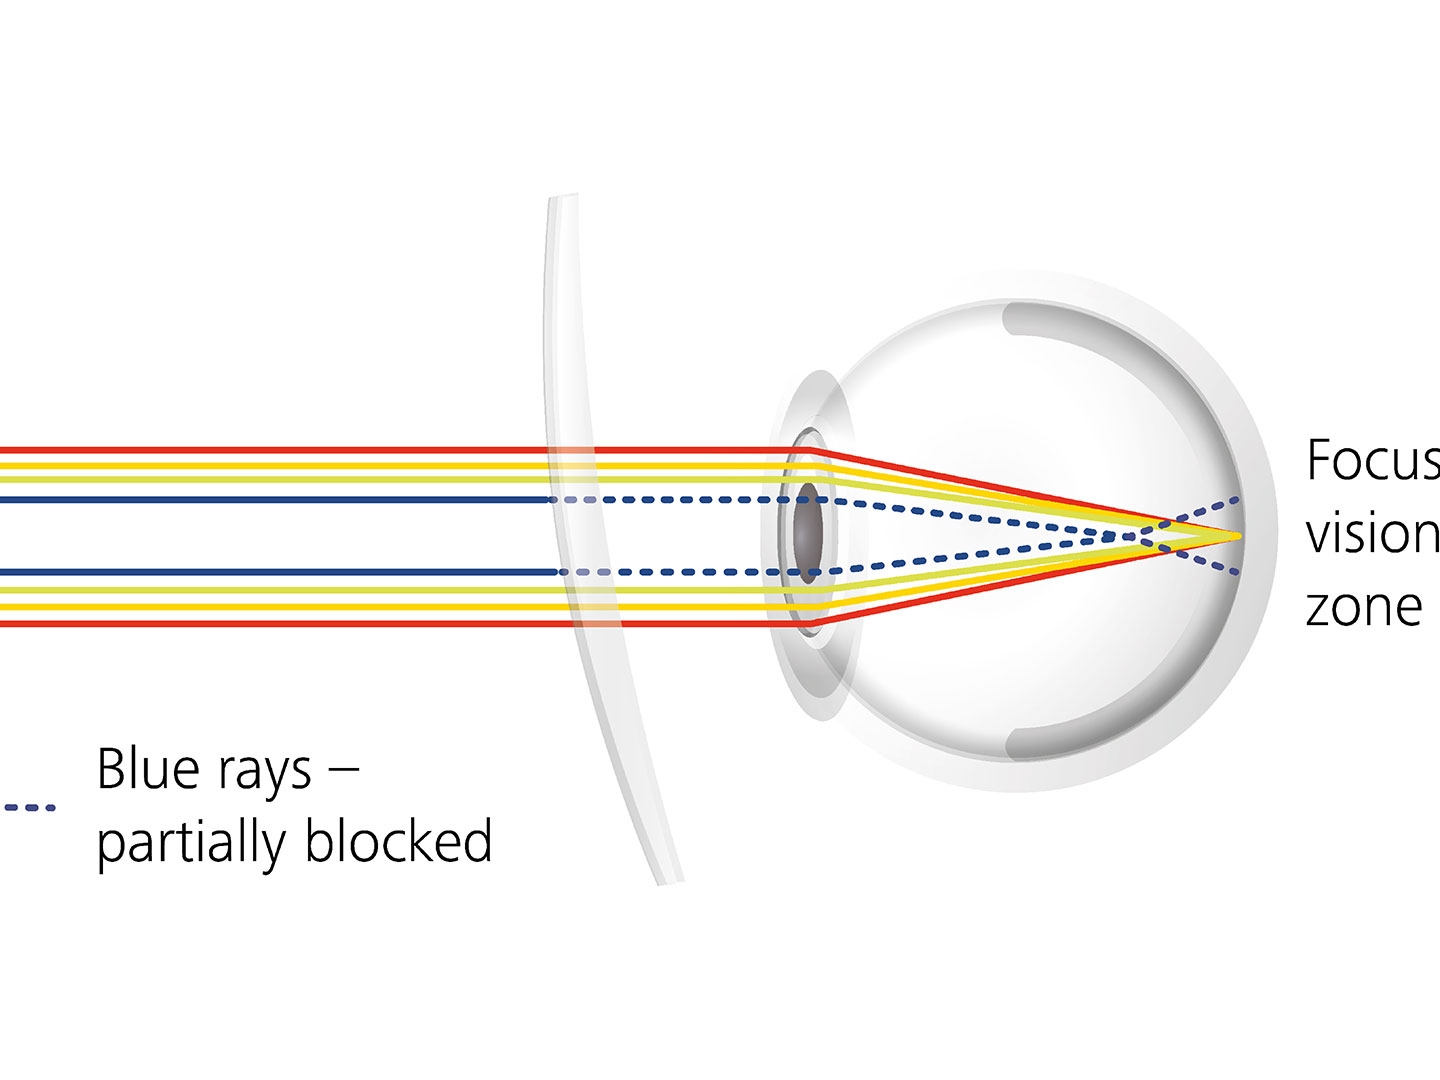 렌즈 코팅이 블루라이트 일부를 차단하여 눈부심을 줄이는 방식을 보여주는 이미지 